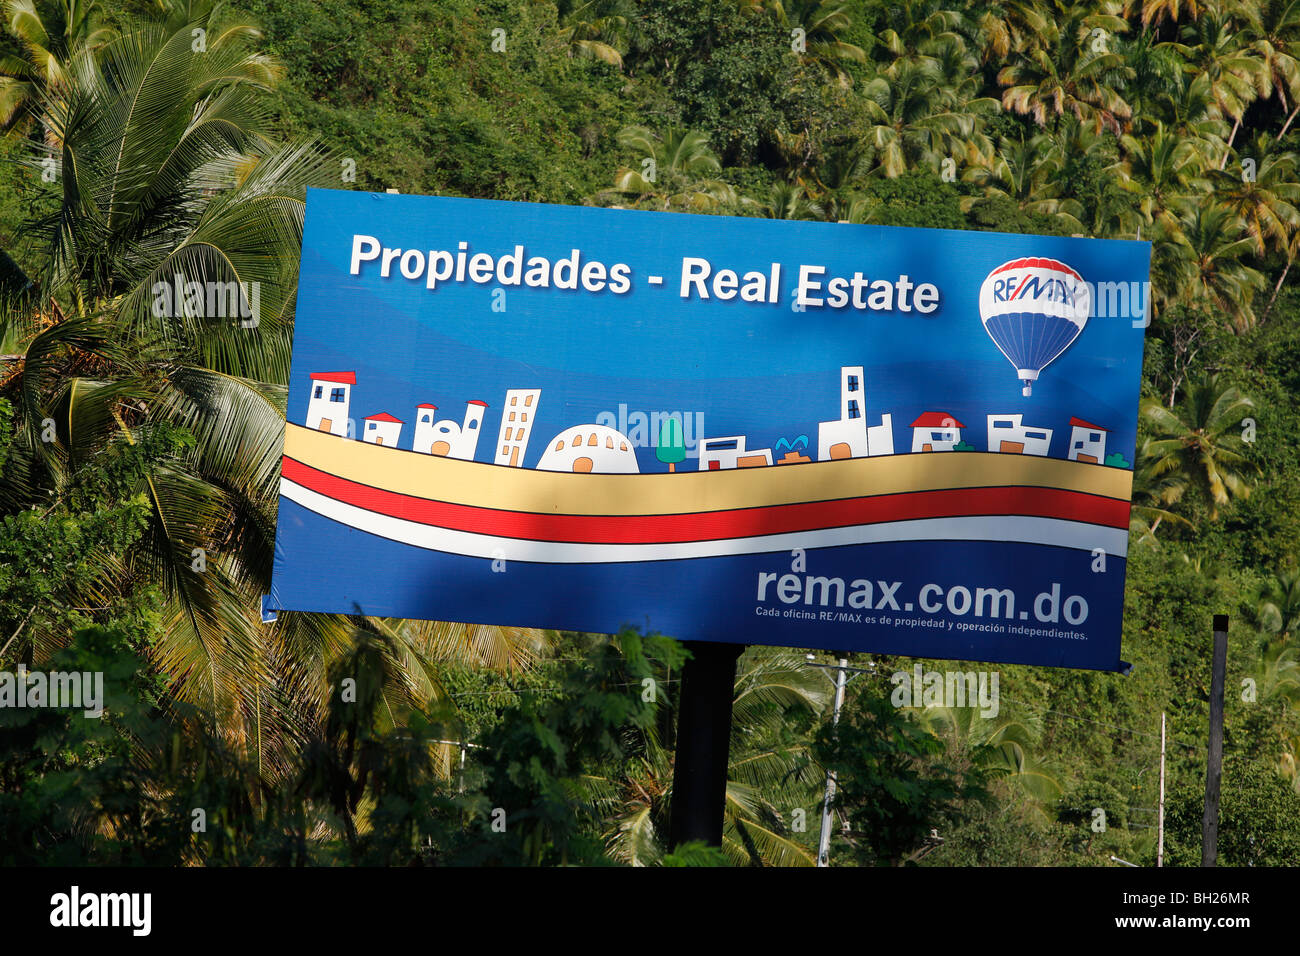 La publicité immobilière, République Dominicaine Banque D'Images